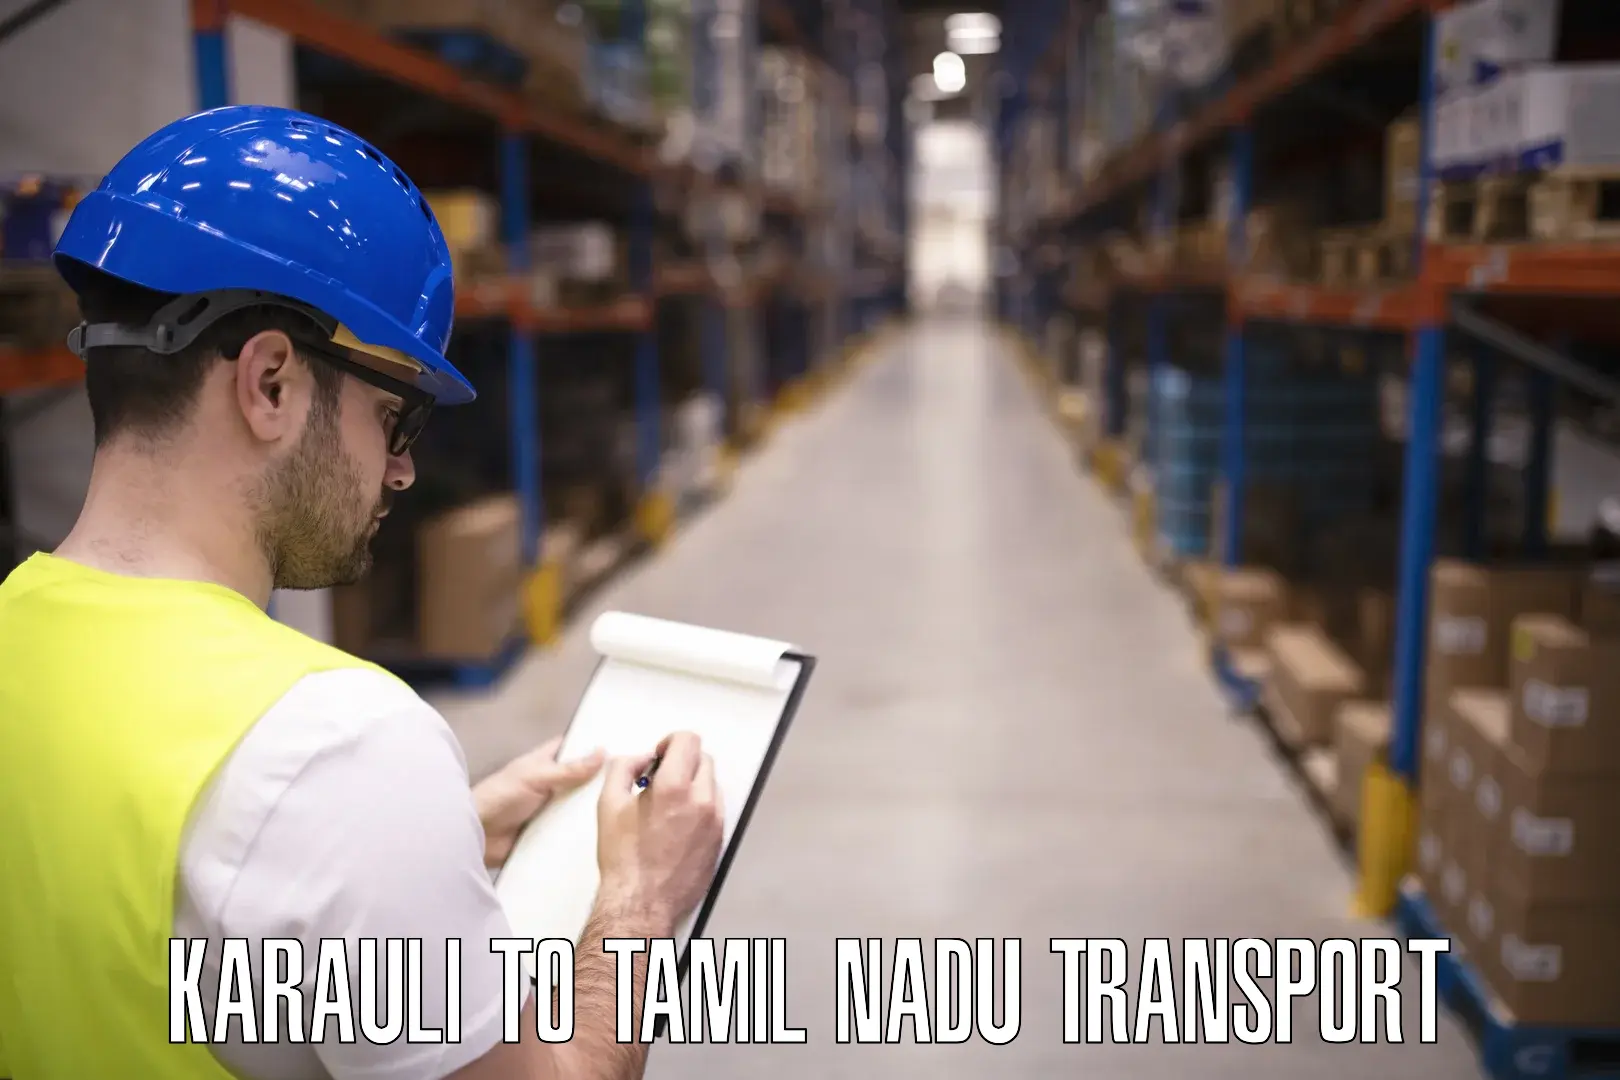 Bike transport service Karauli to Tamil Nadu